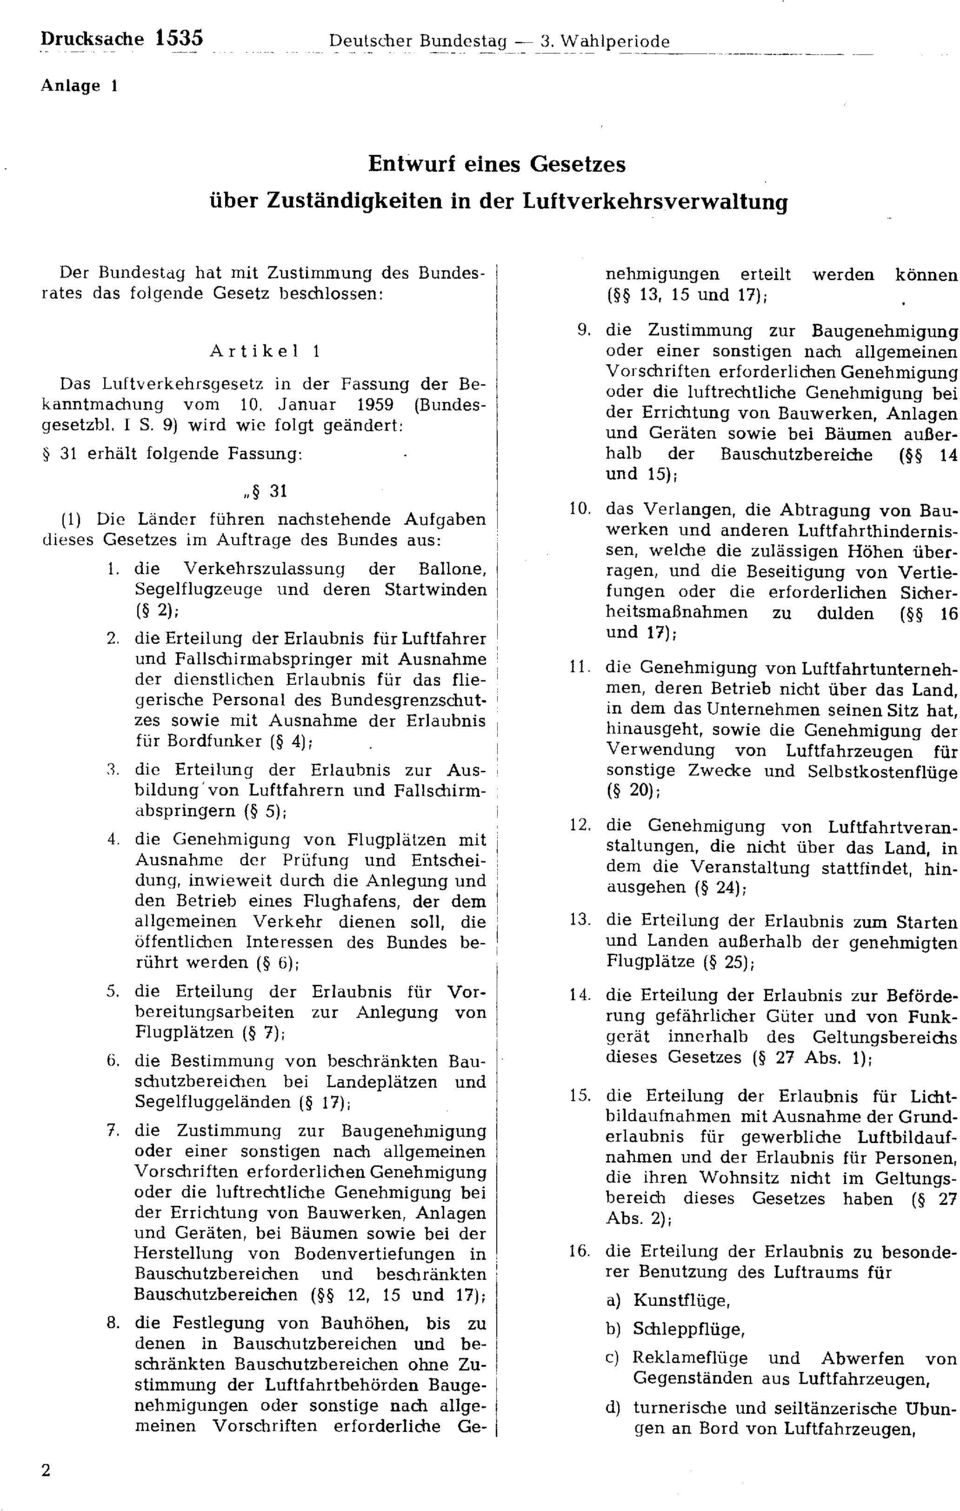 Luftverkehrsgesetz in der Fassung der Bekanntmachung vom 10. Januar 1959 (Bundesgesetzbl. I S.